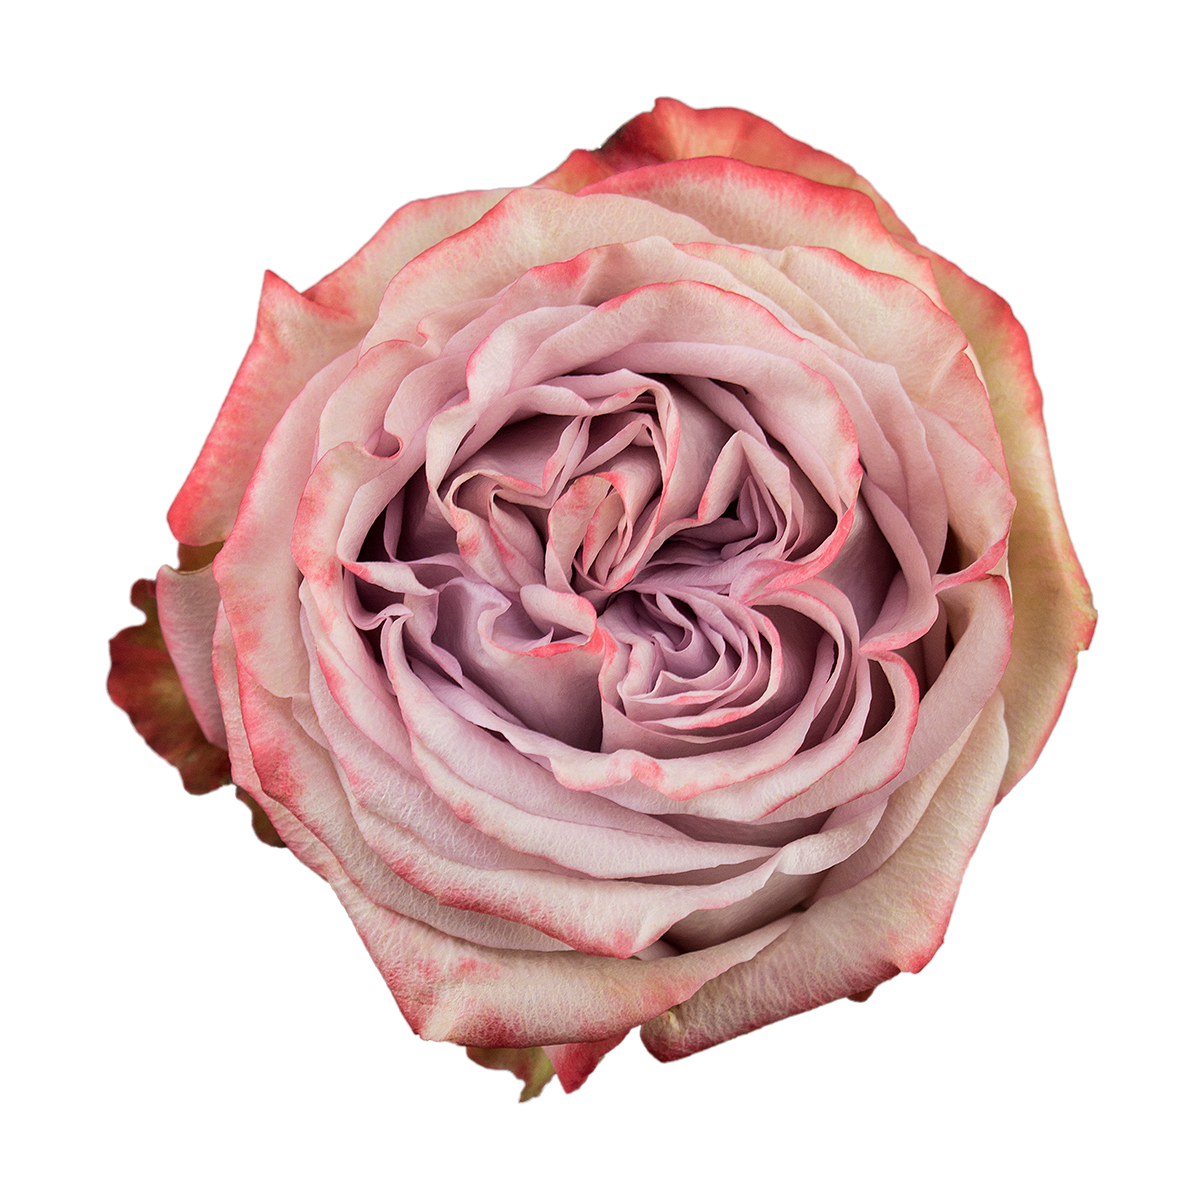 LILAC WONDER rose - Florist Rose Paradise! - Decofresh TOTF2020 on Thursd